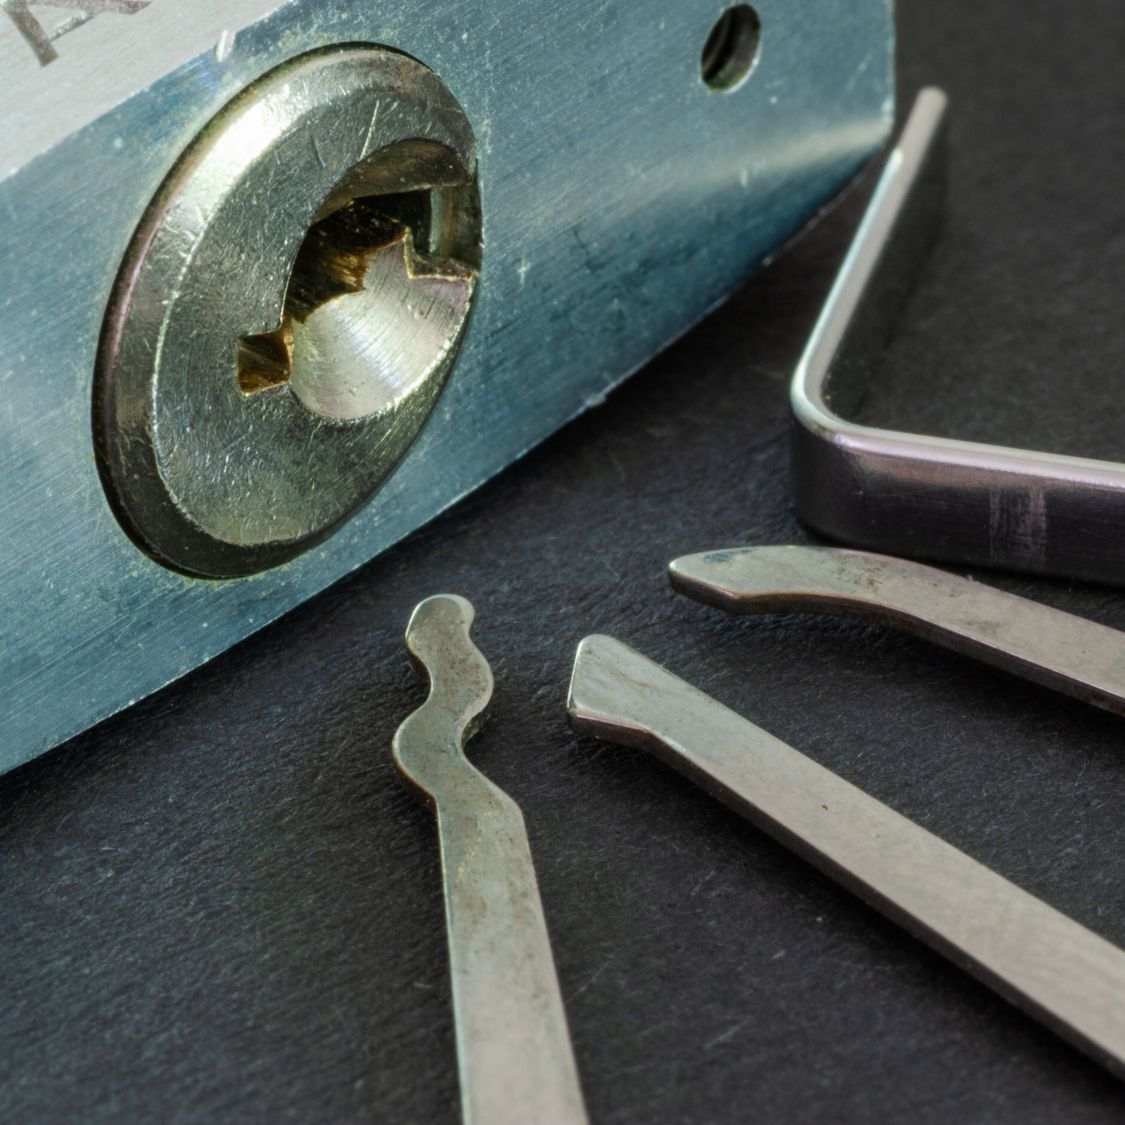 4 Common Mistakes To Avoid When Lockpicking